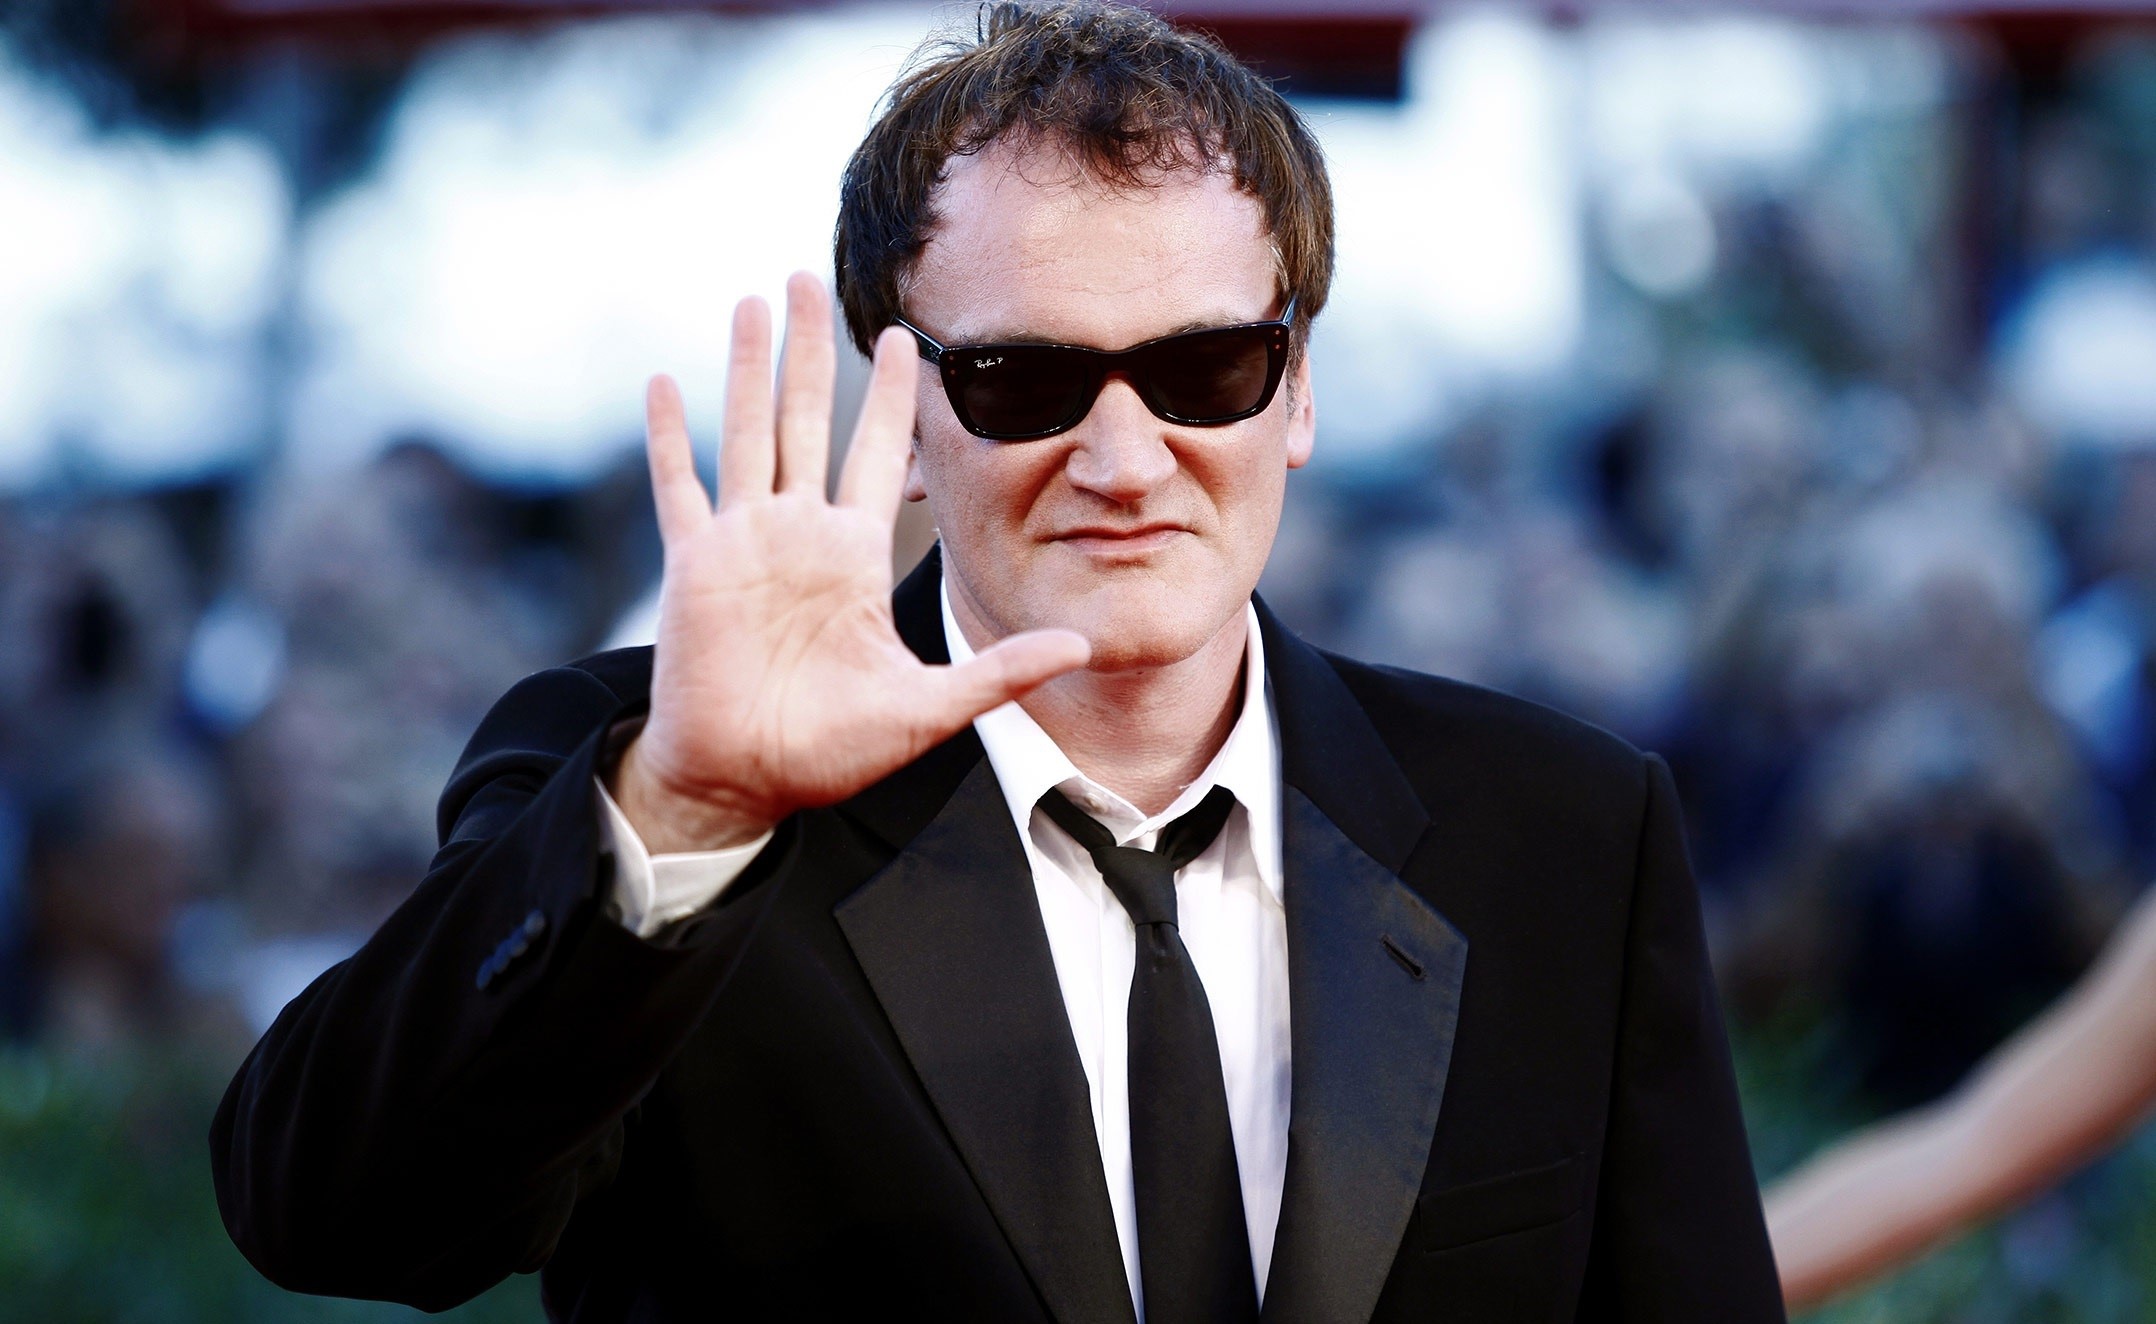 Quentin Tarantino'nun sözde son filmi olacağı belirtilen yapımının adının 'Film Eleştirmeni' olduğu bildirildi. Habere göre, ünlü yönetmen, muhtemelen 1970'lerin sonlarında Los Angeles'ta geçen ve başrolde bir kadının oynayacağı filmini bu sonbaharda yönetmeyi planlıyor. 